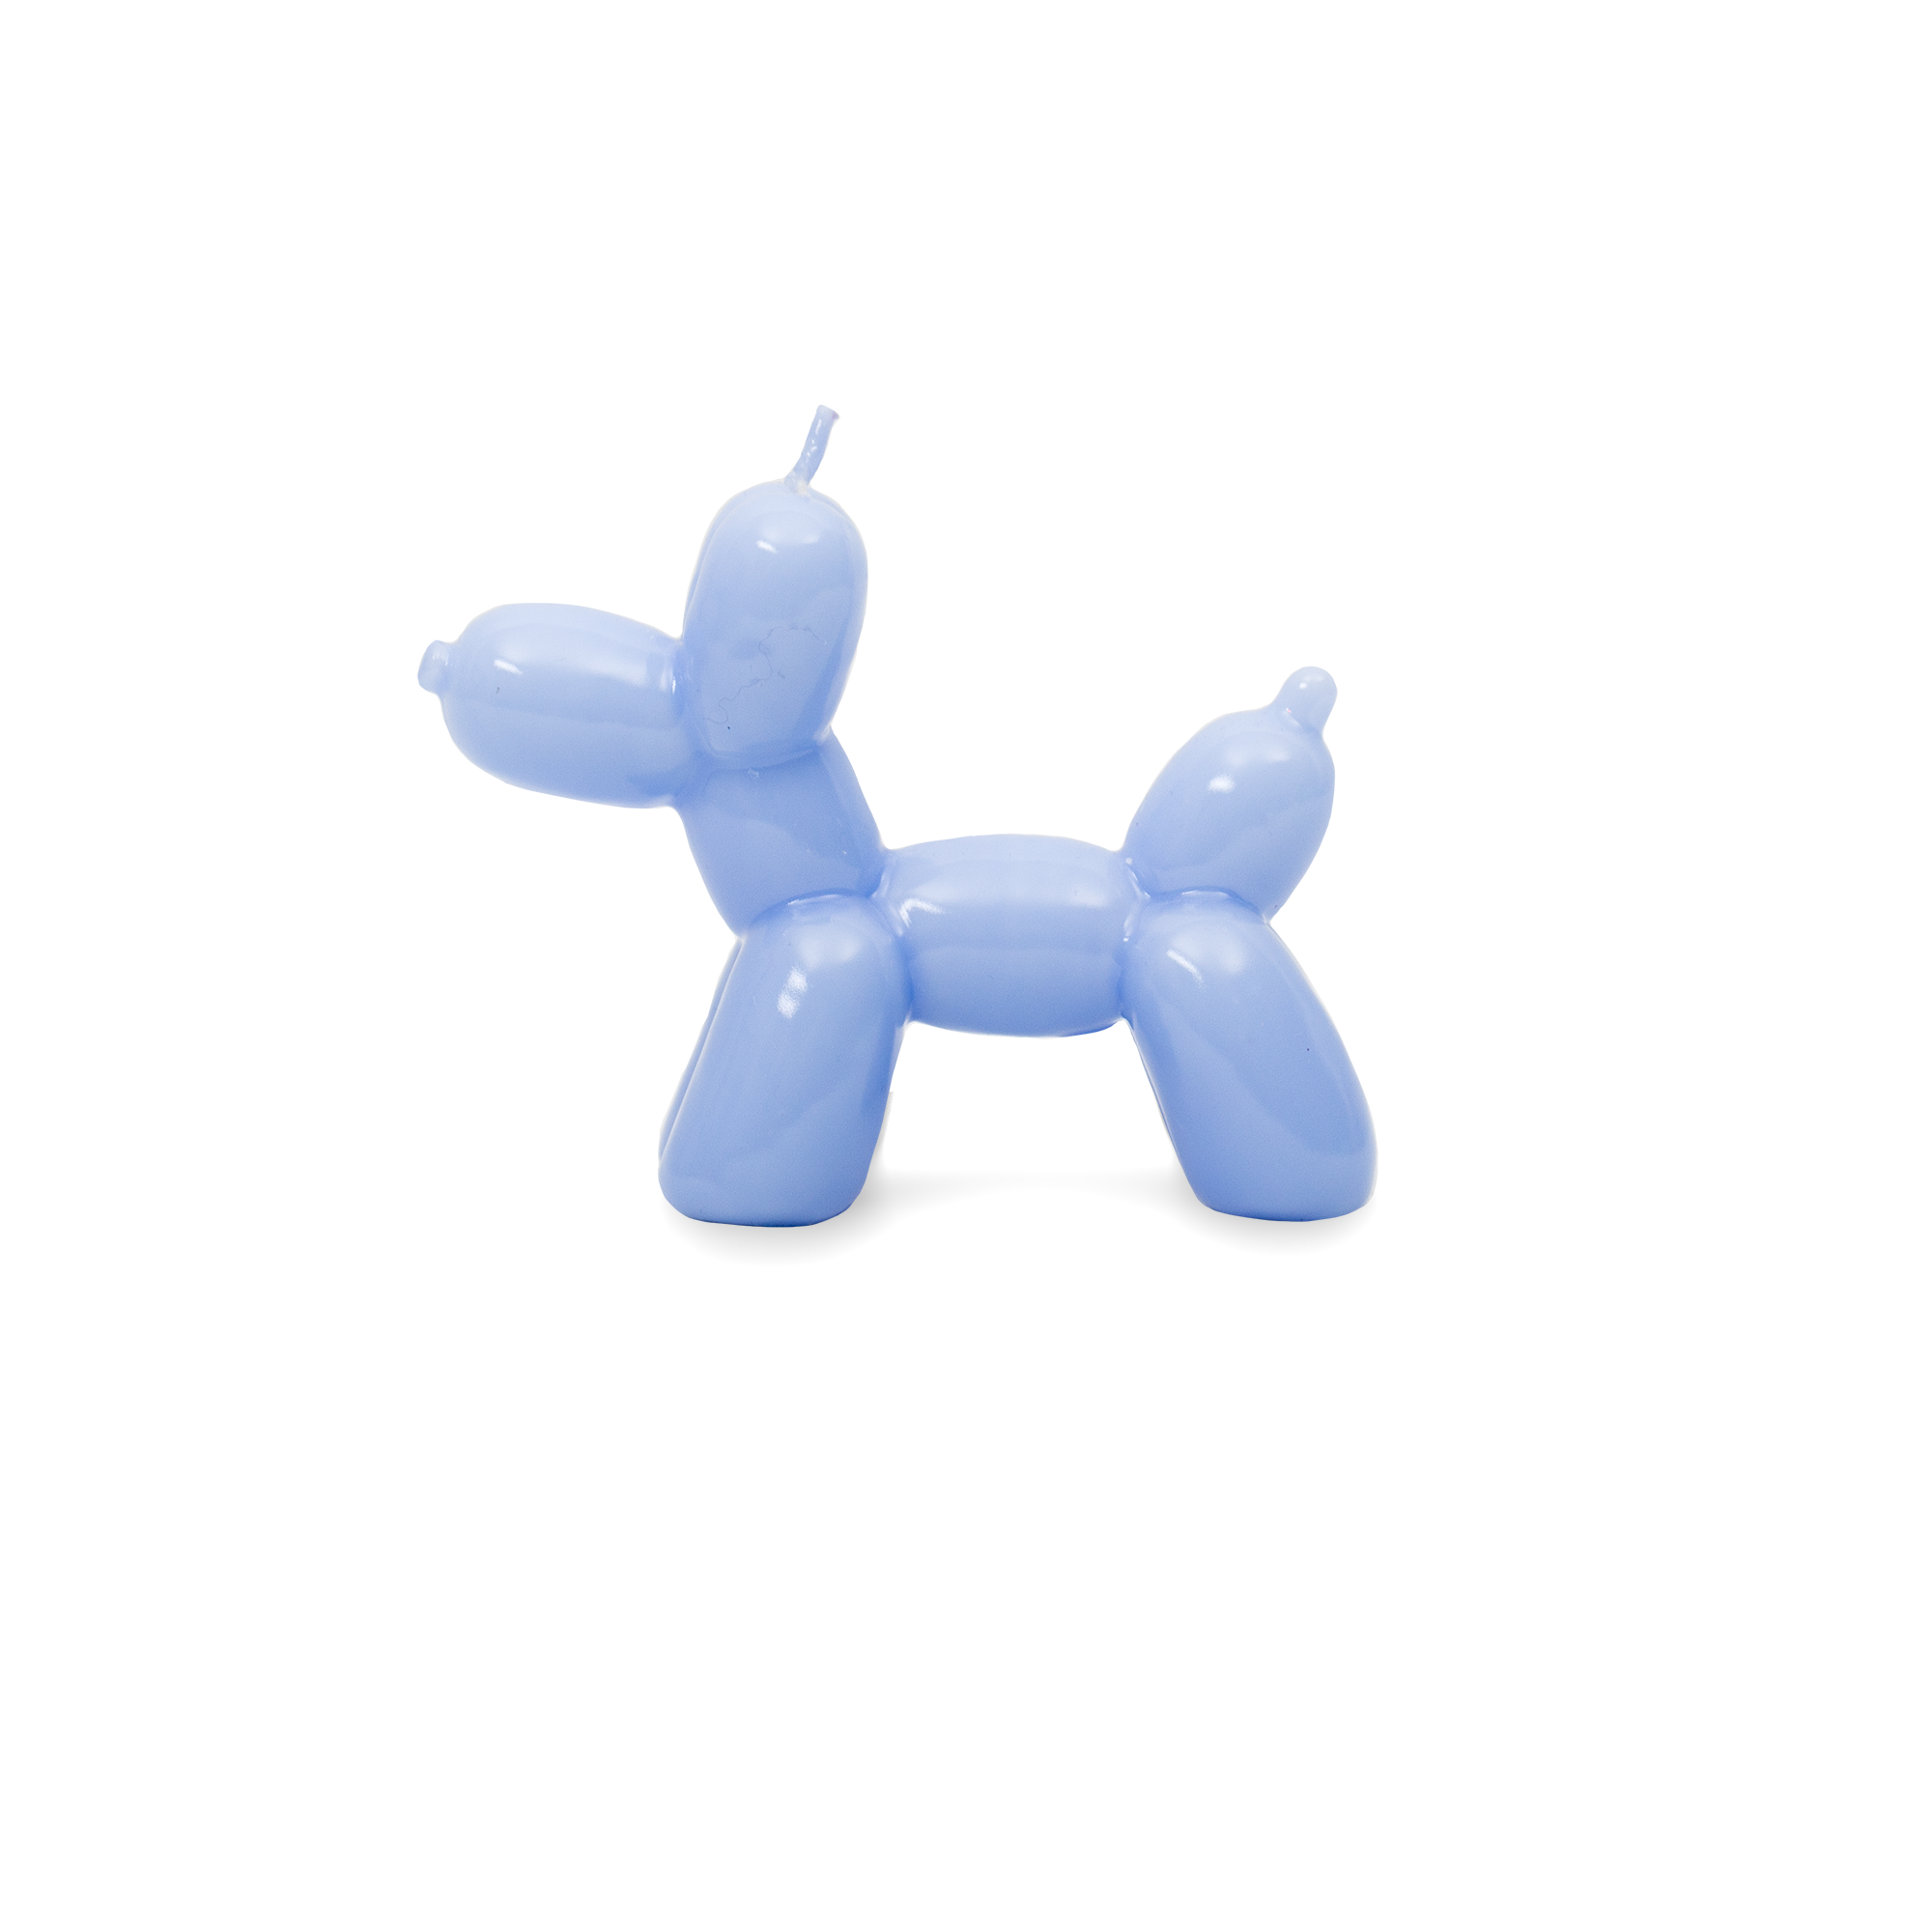 Candle Balloon Dog Blue - Helio Ferretti 